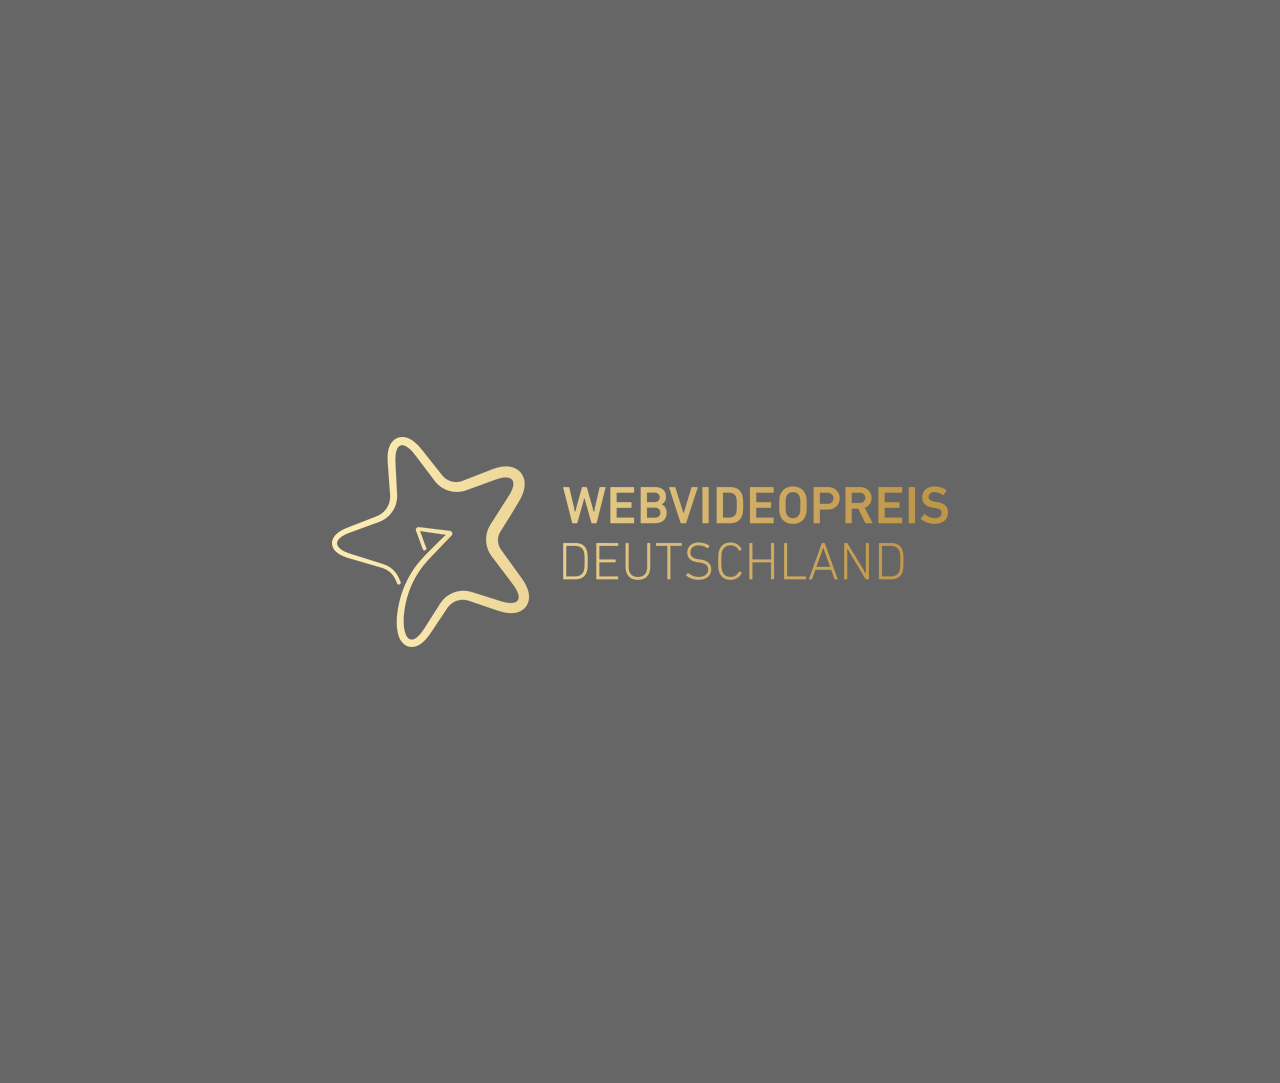 Webvideopreis Deutschland award on grey background